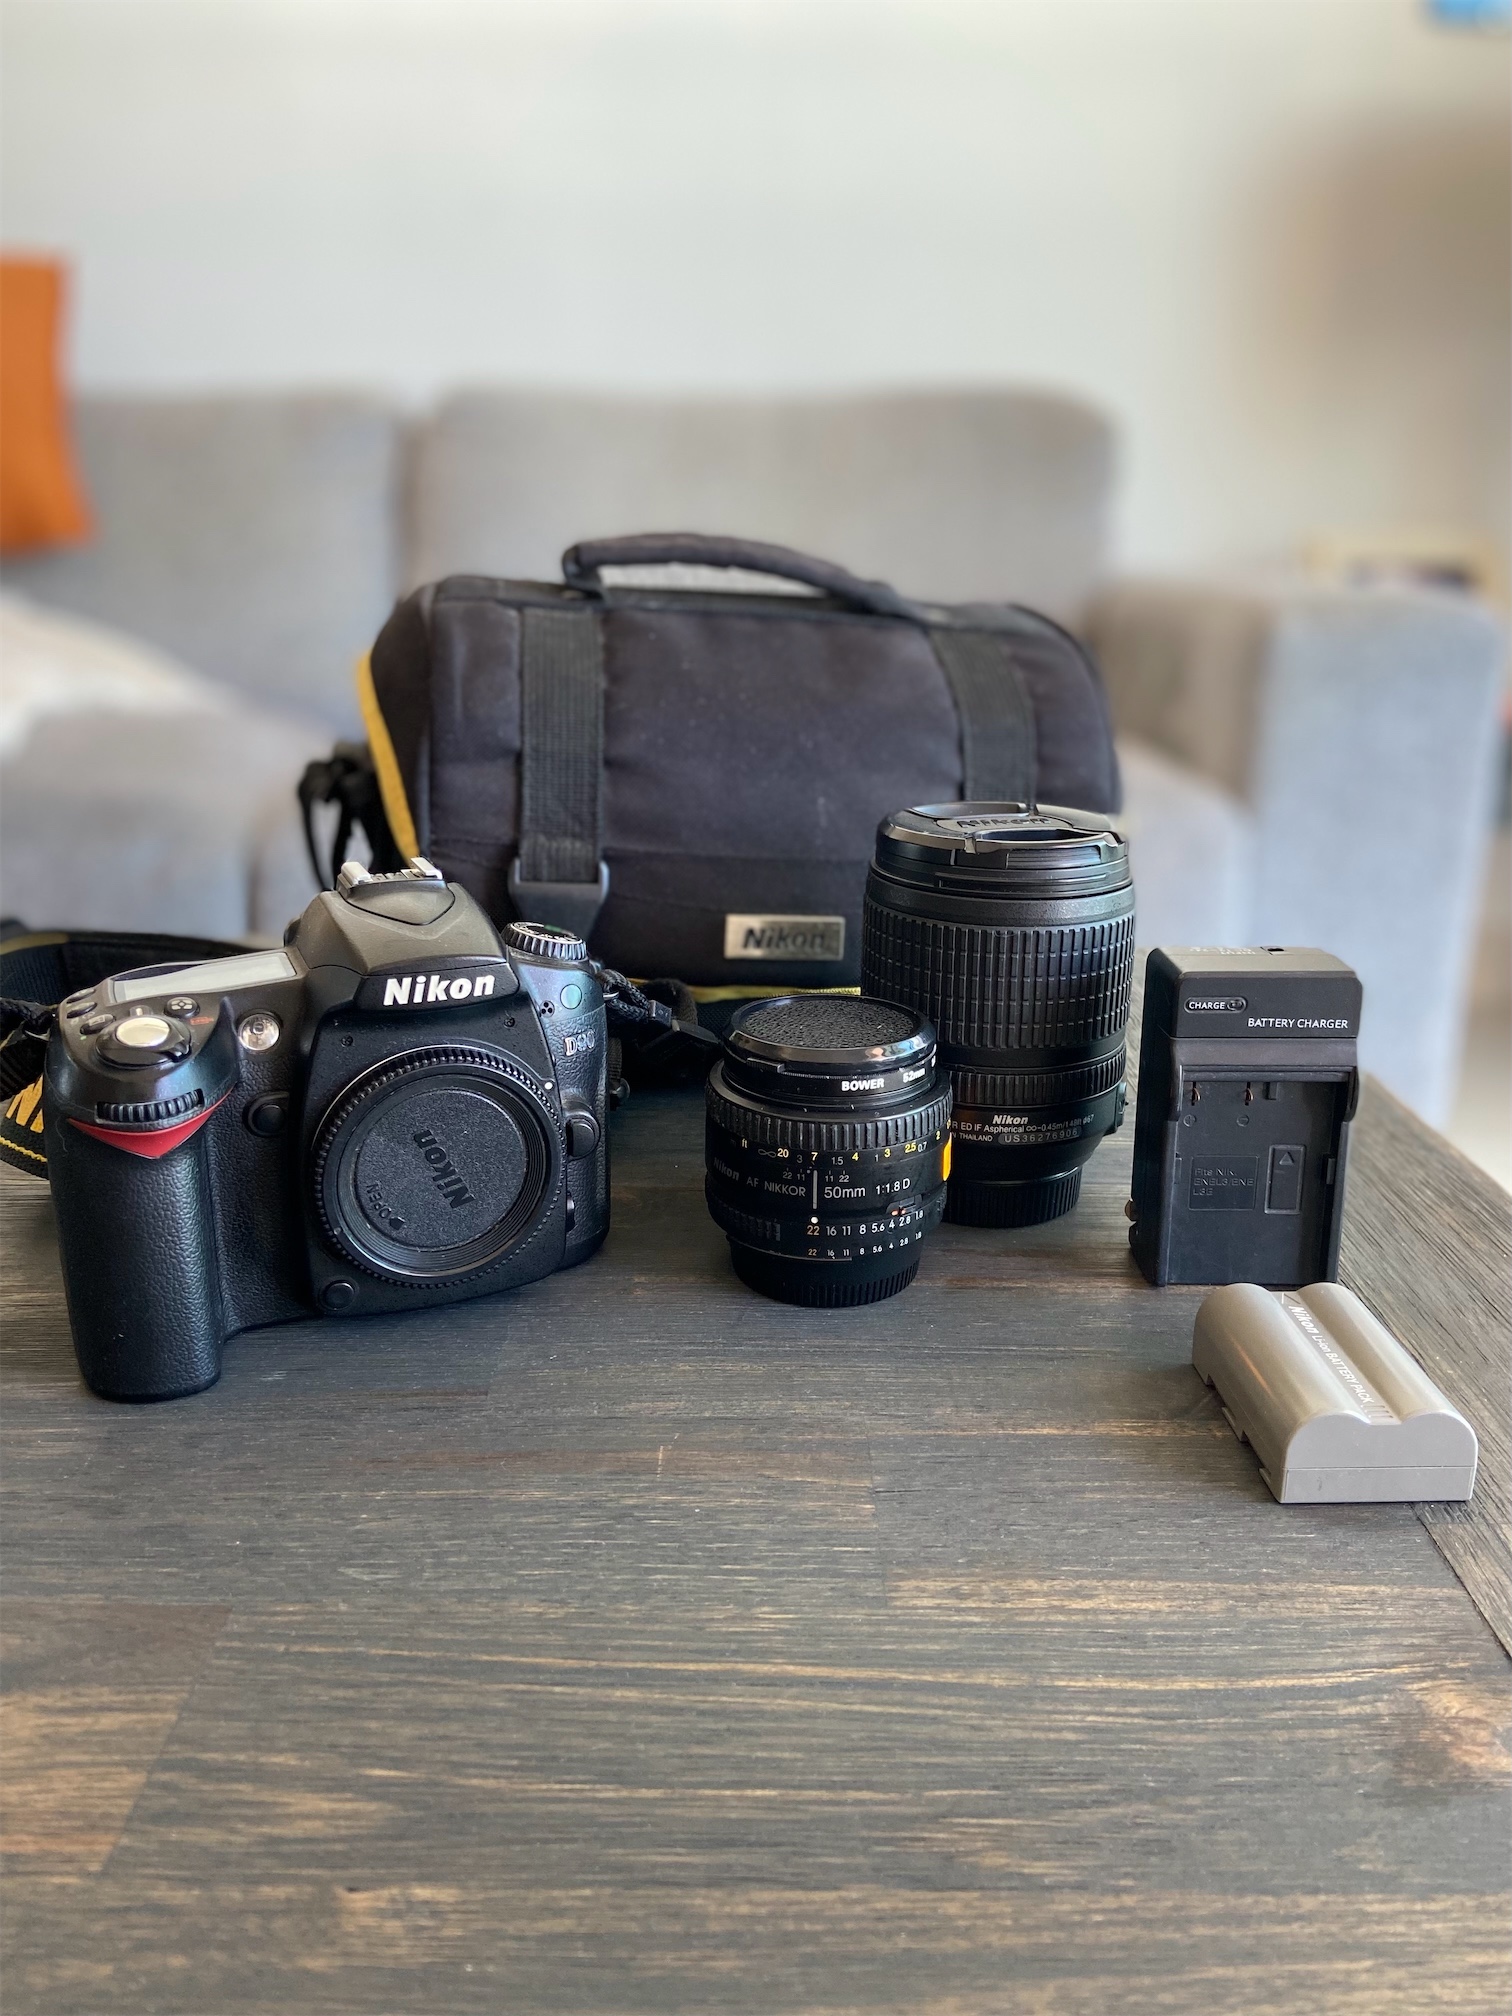 camaras y audio - Vendo cámara fotográfica digital Nikon D90, 2 lentes y accesorios